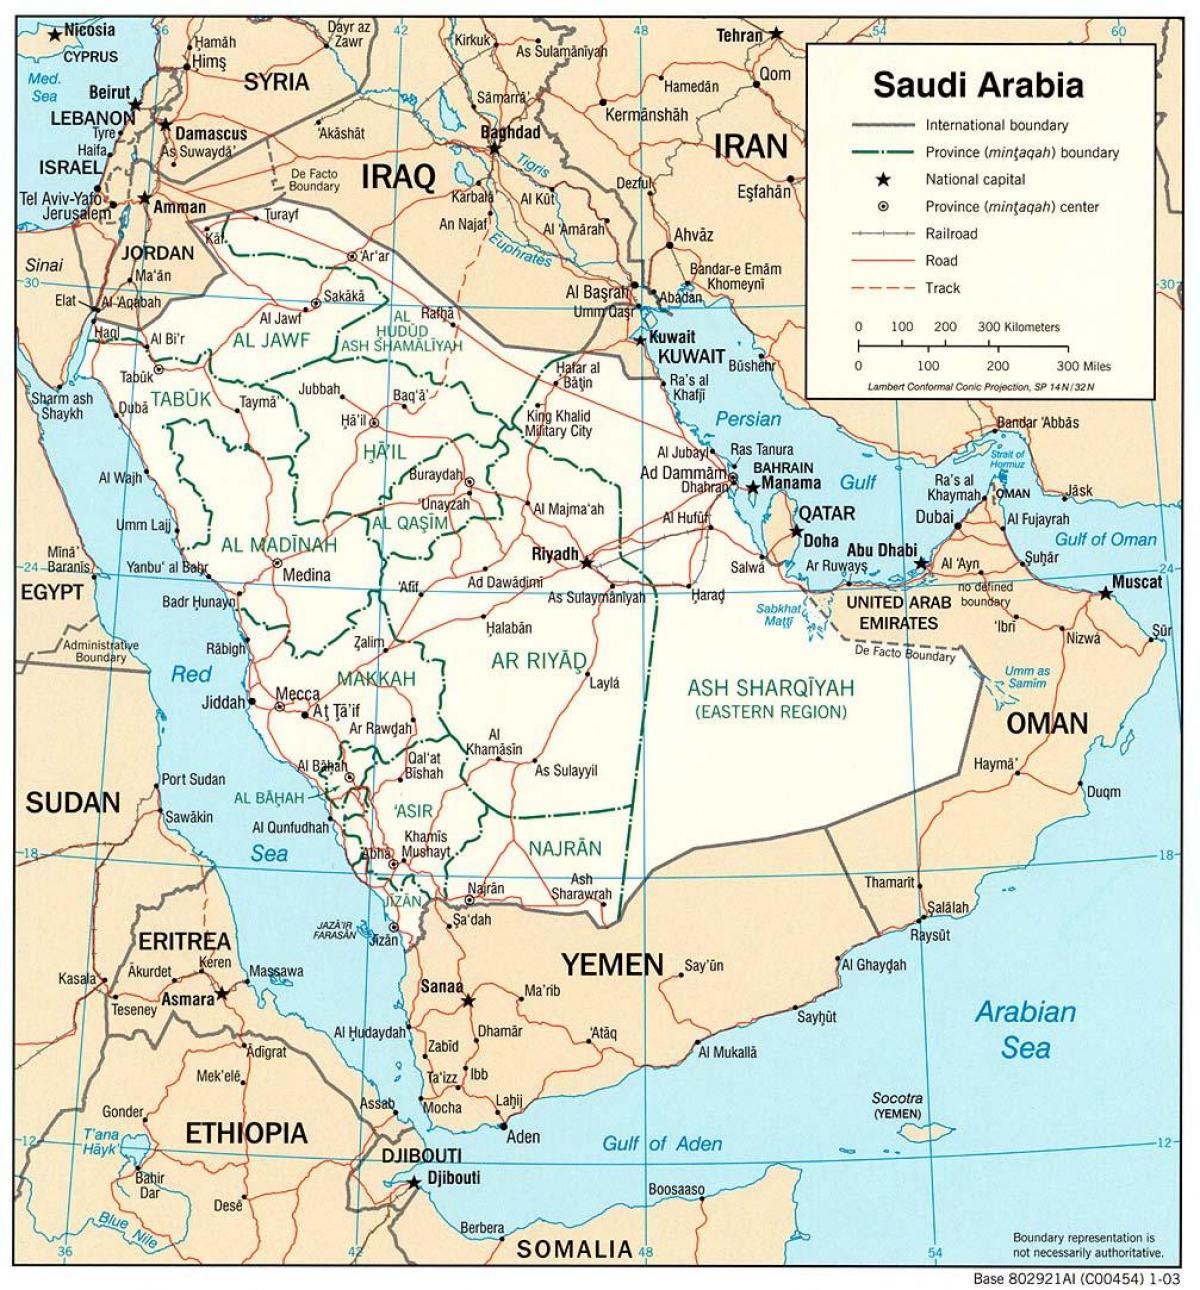 Arab Saudi penuh dengan peta